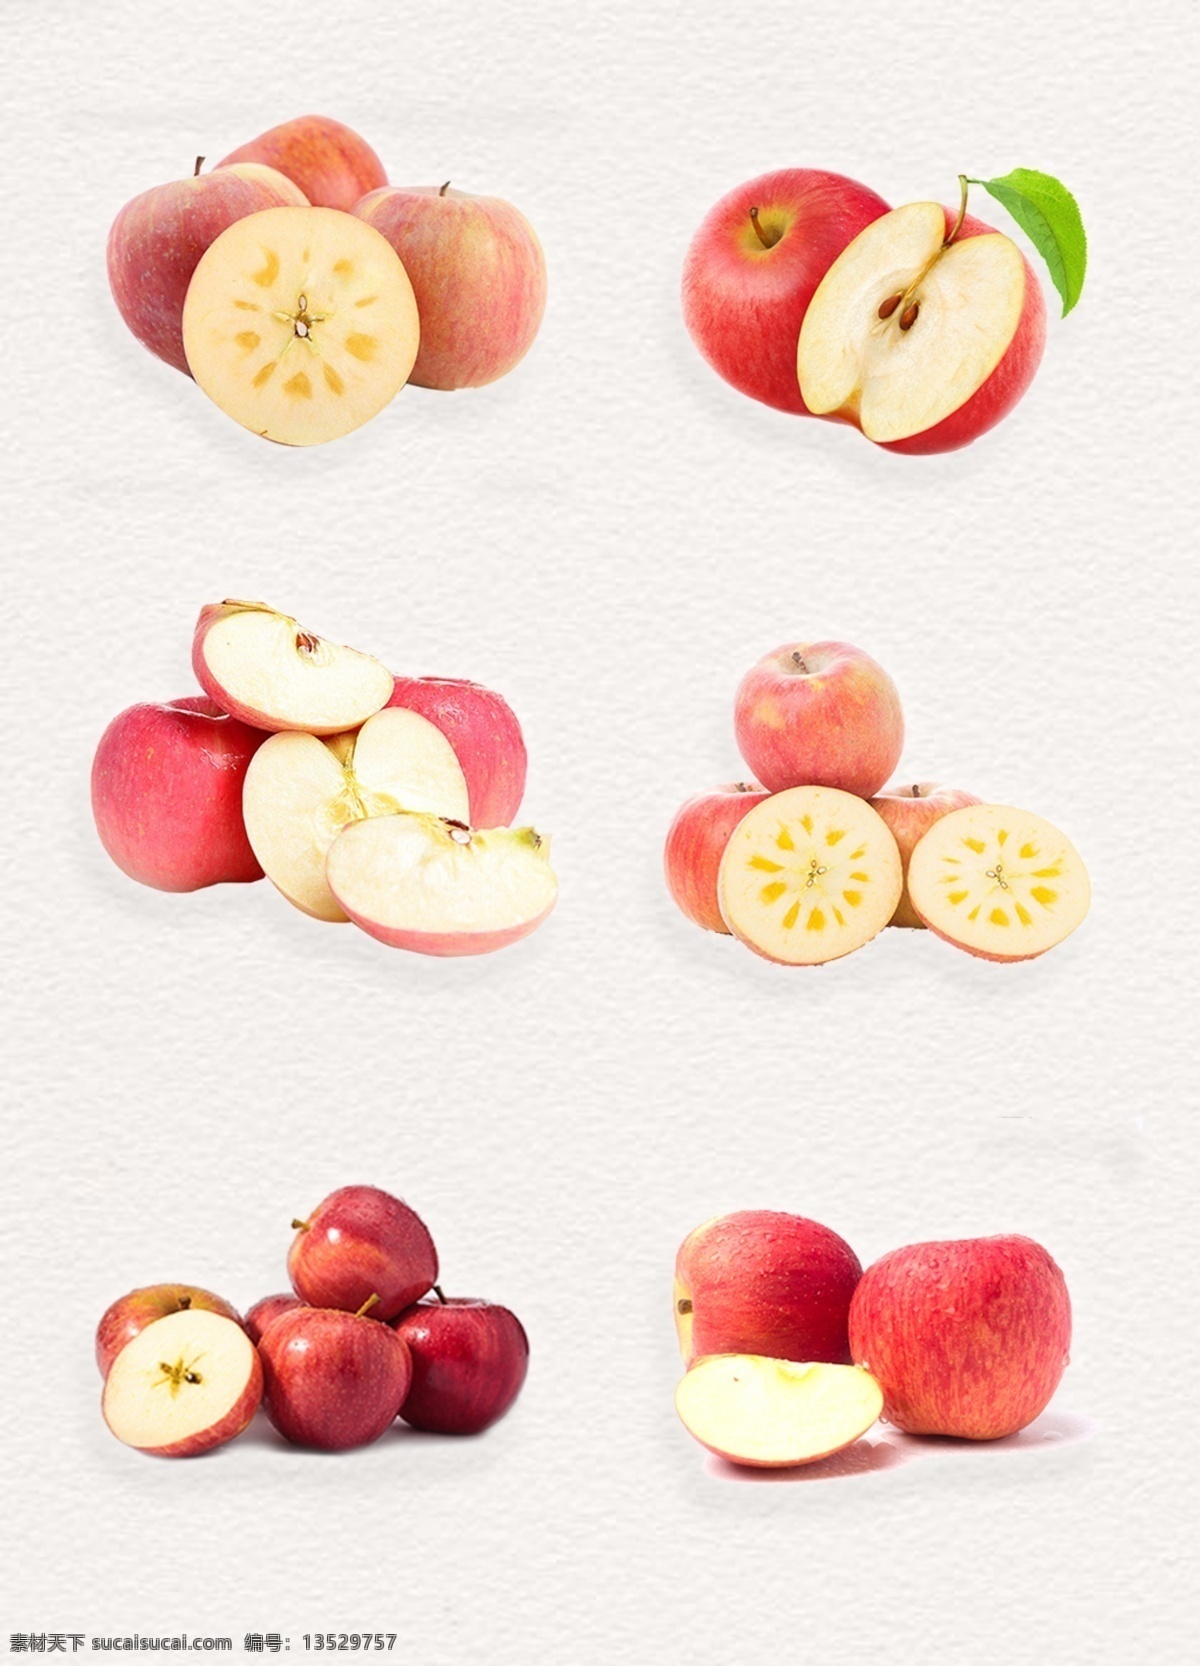 新鲜 苹果 鲜甜 红富士 水果 红苹果 切开的苹果 营养水果 产品实物